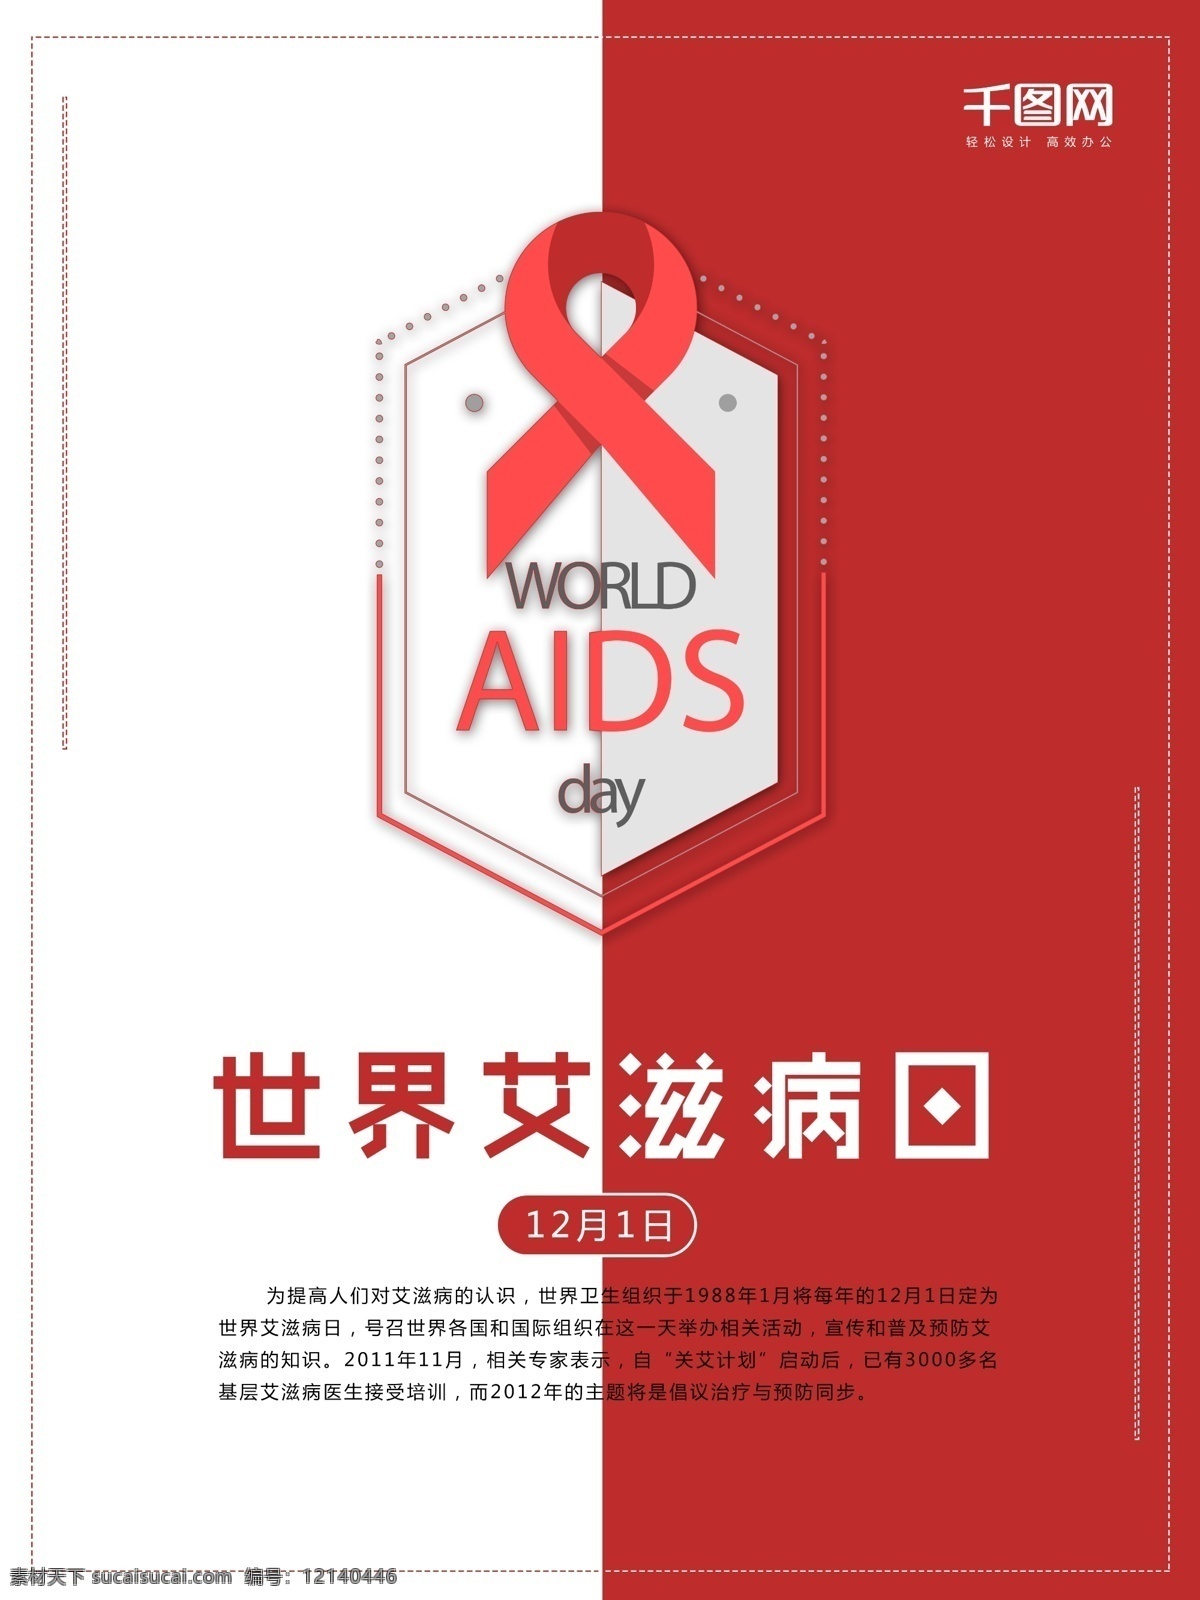 红色 丝带 世界 艾滋病 日 公益 艾滋病日 海报 红丝带 12月1日